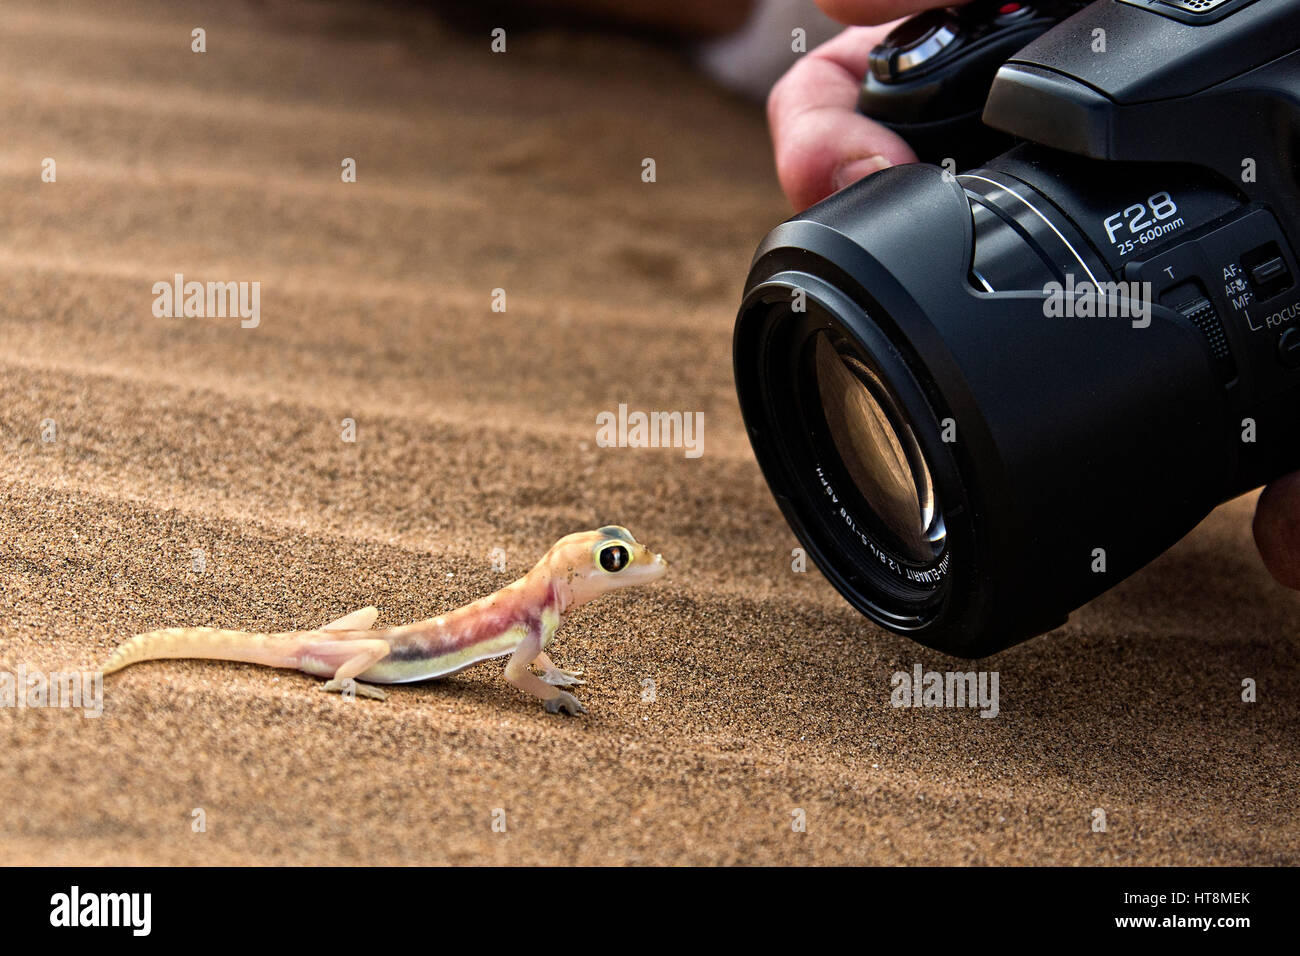 Photographe de près le tournage d'un chauds et colorés Palmato Gecko sur les sables du désert du Namib - vue latérale Banque D'Images